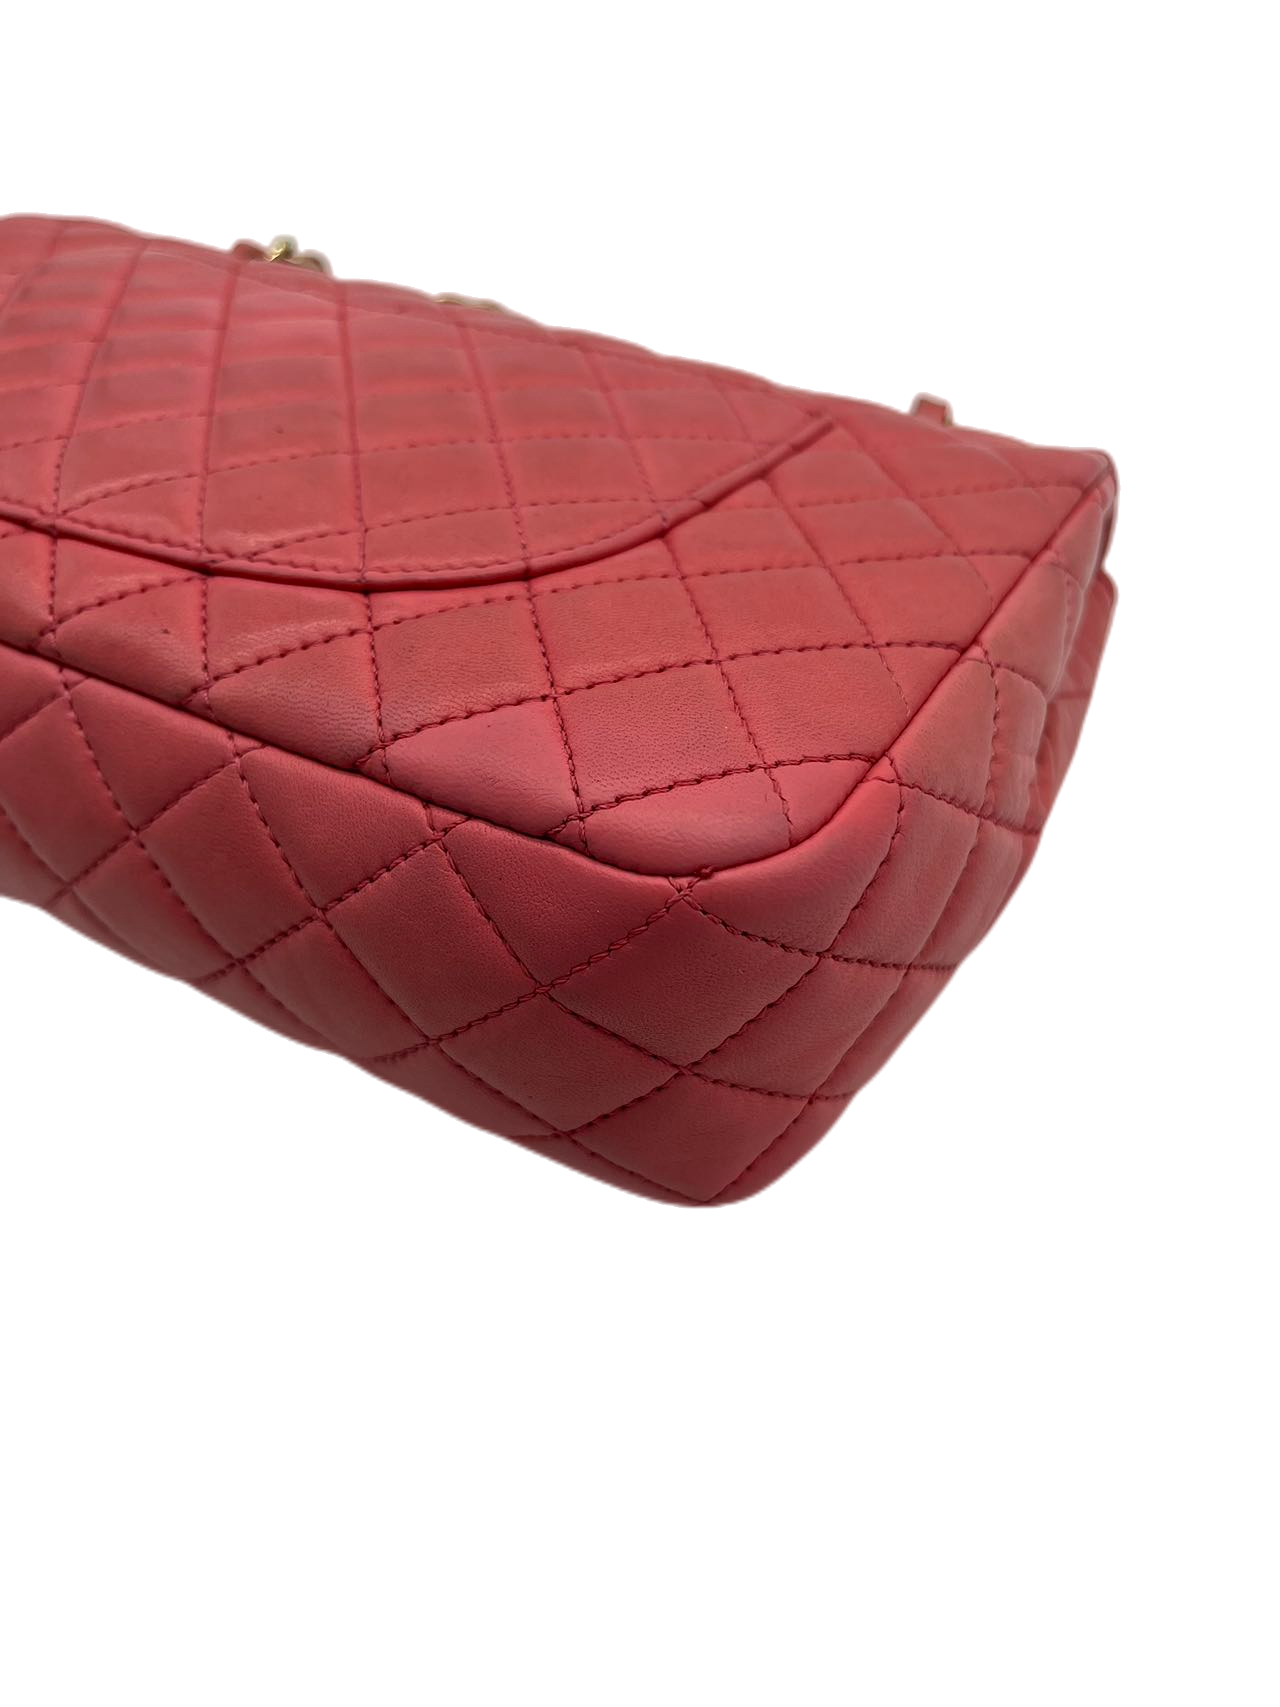 Preloved Chanel Timeless Classic Valentine Flap Shoulder Bag